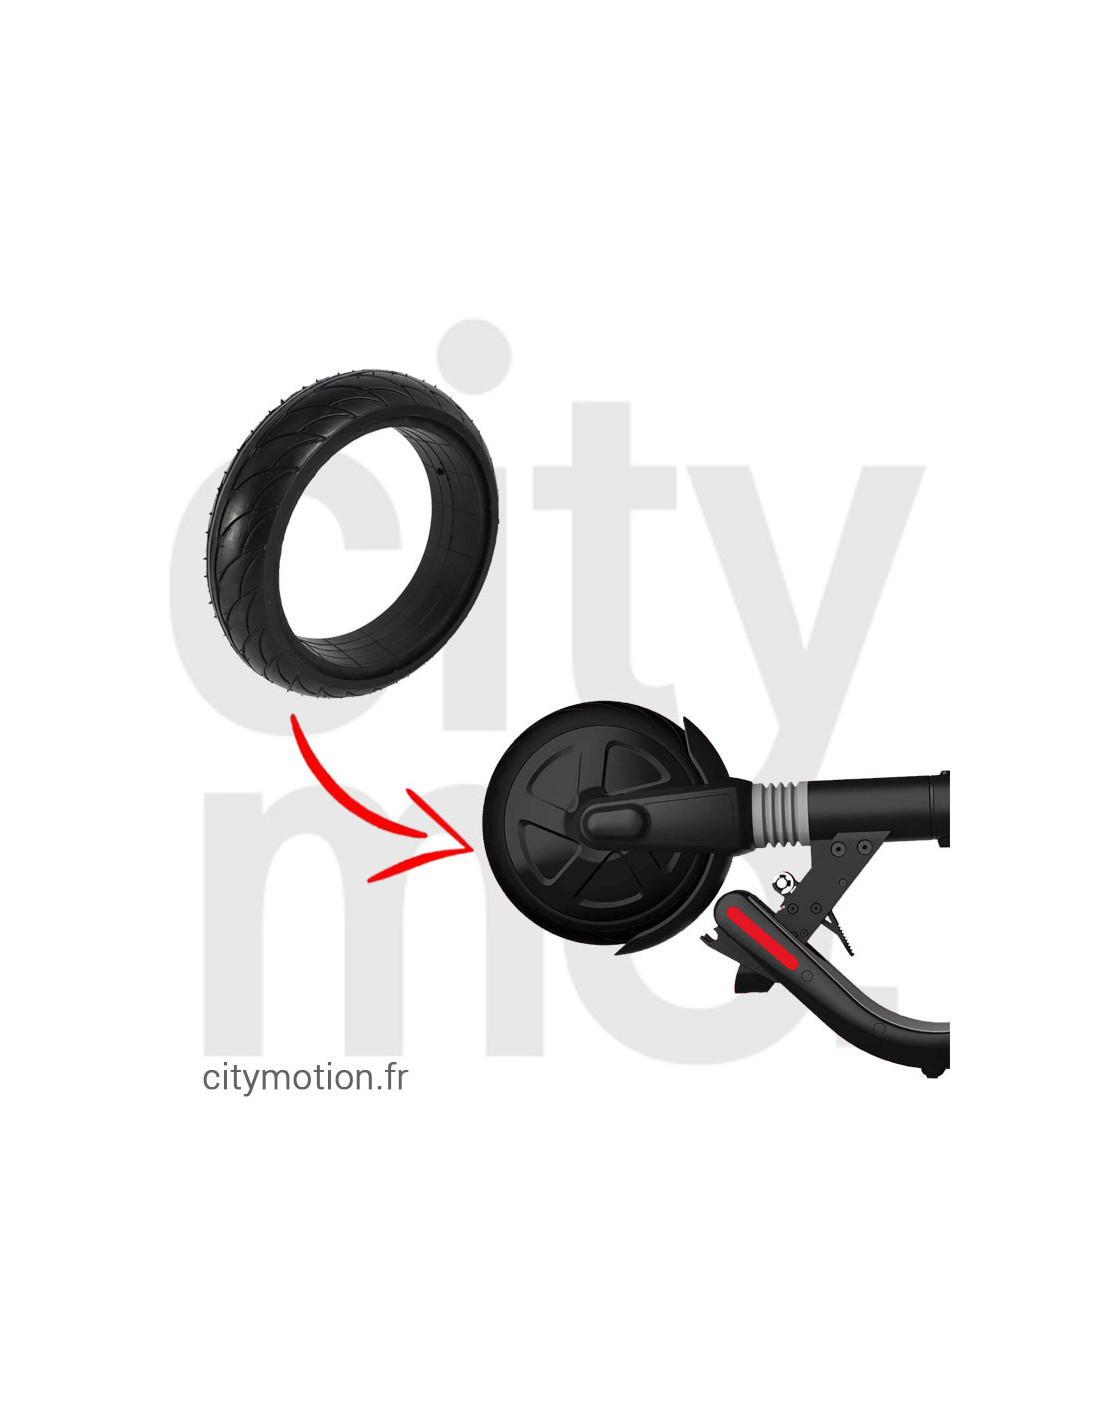 Pneu MONORIM pour trottinette électrique roue avant/arrière noir Inner  Honeycomb tubeless 10,2 Note 1 - réparation parfaite